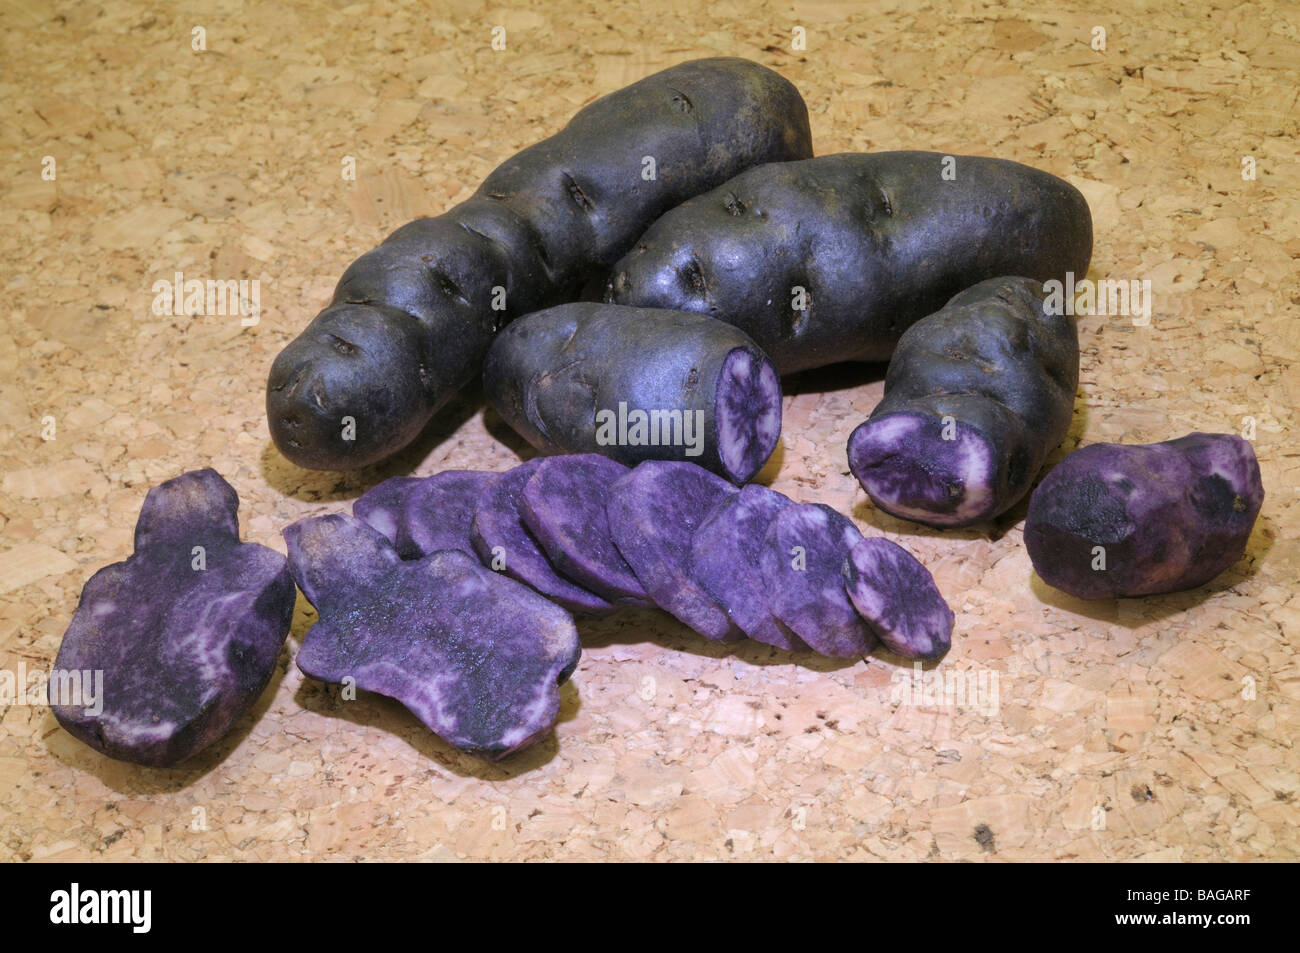 Potato (Solanum tuberosum), variety: Vitelotte Noire, studio picture Stock Photo